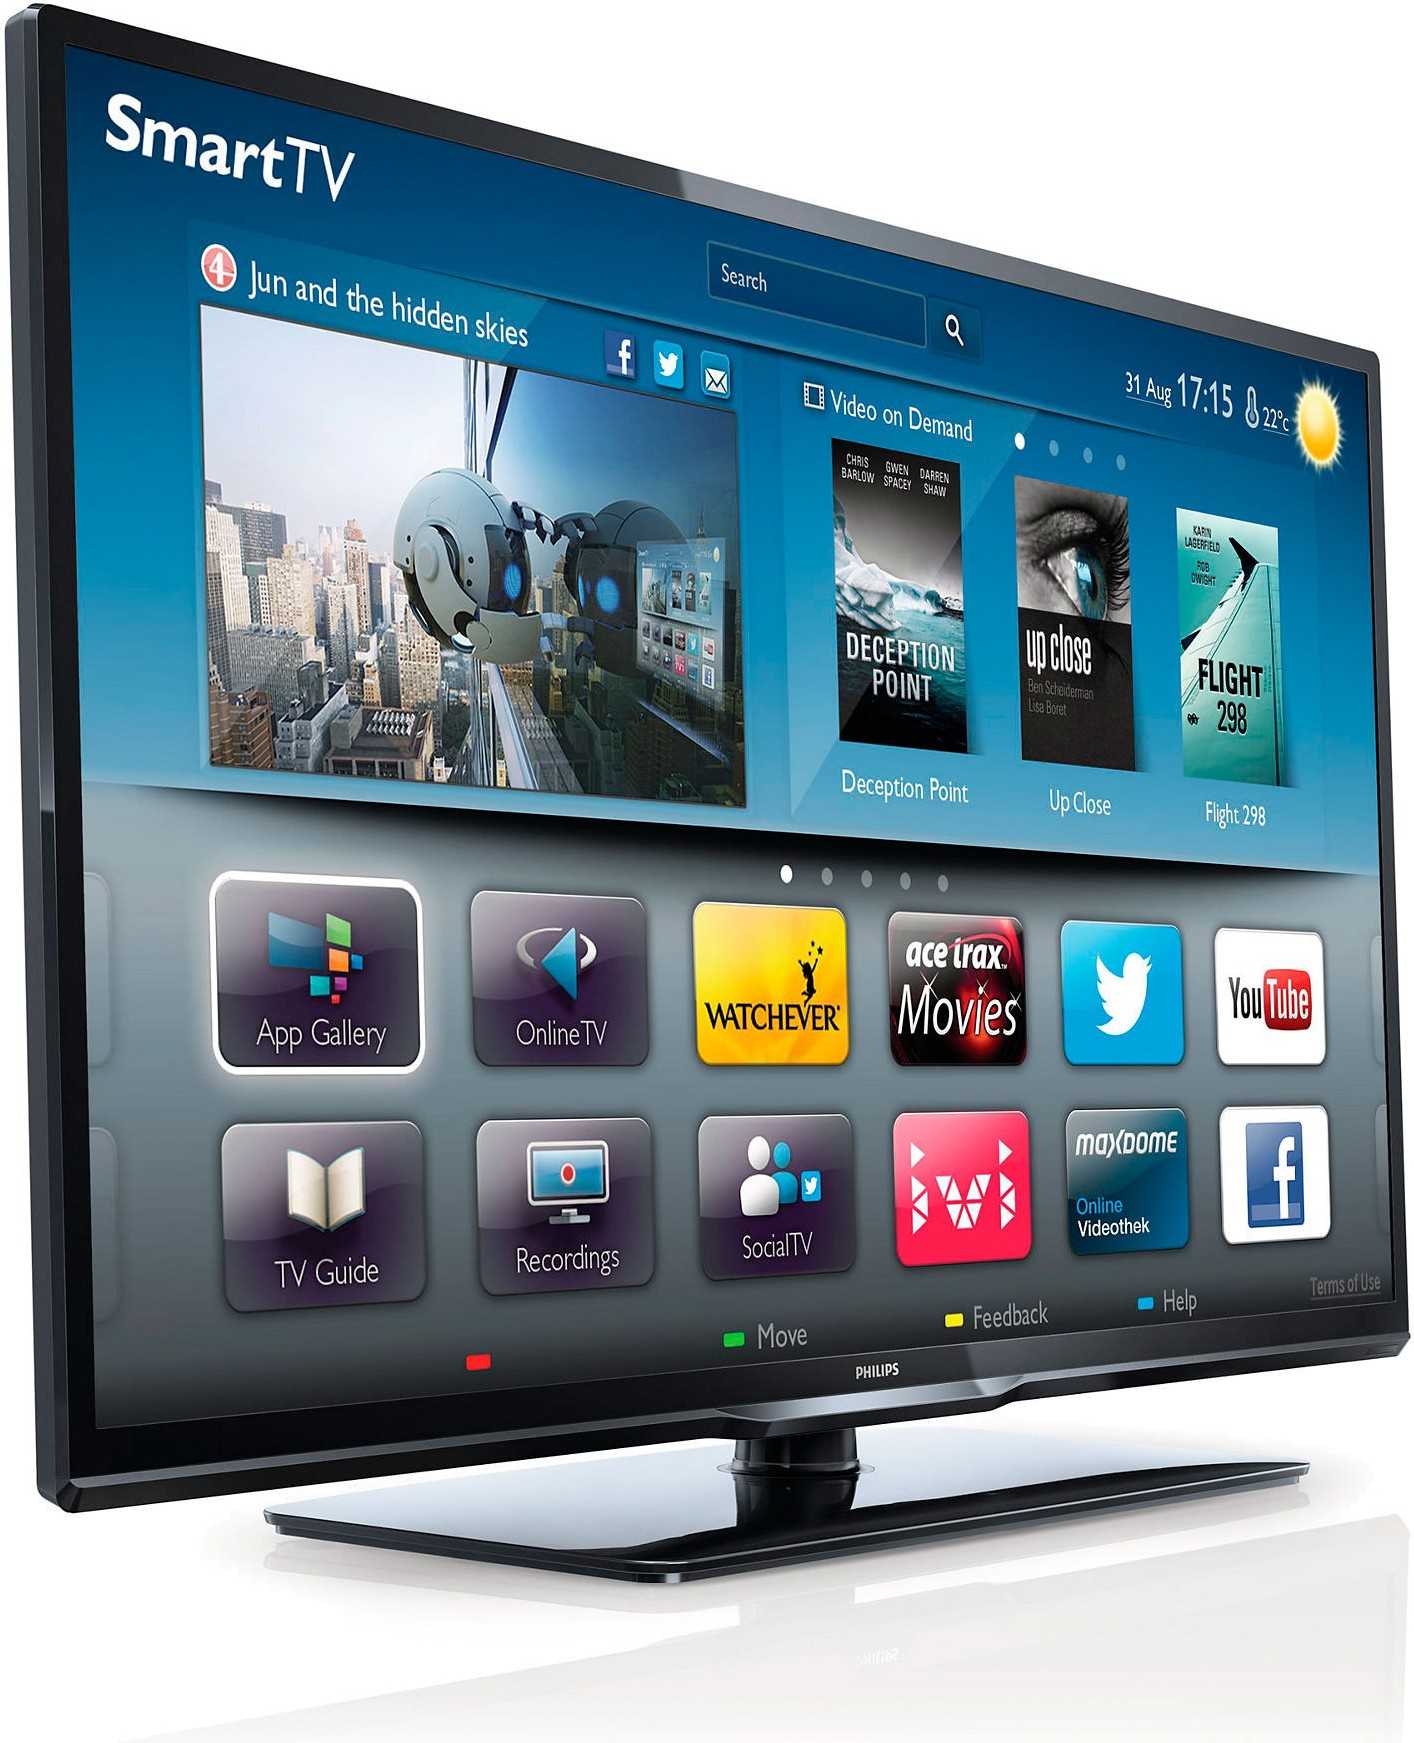 Телевизор Philips 46PFL8606H - подробные характеристики обзоры видео фото Цены в интернет-магазинах где можно купить телевизор Philips 46PFL8606H